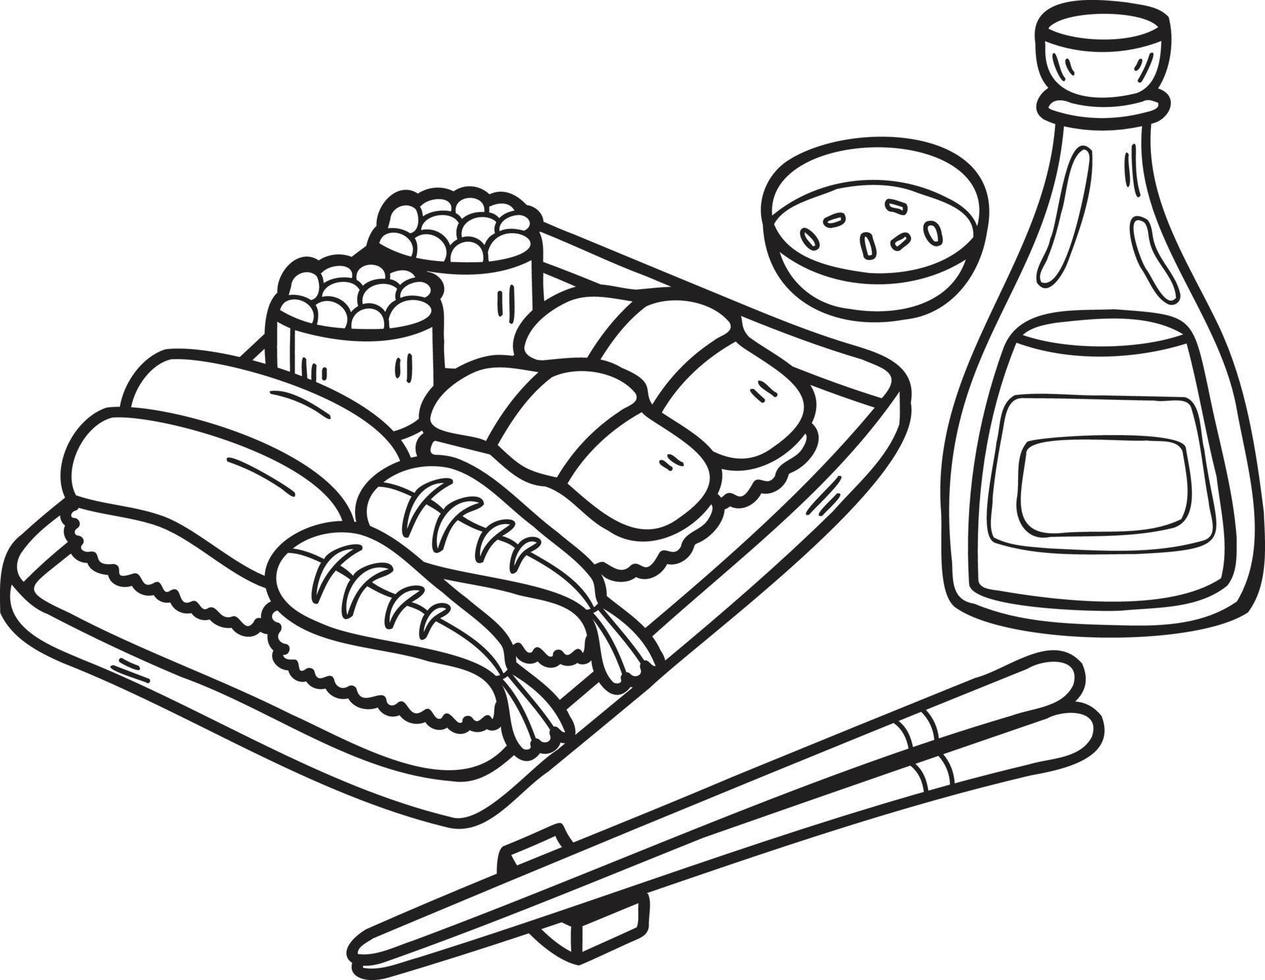 dibujado a mano sushi y palillos ilustración de comida china y japonesa vector